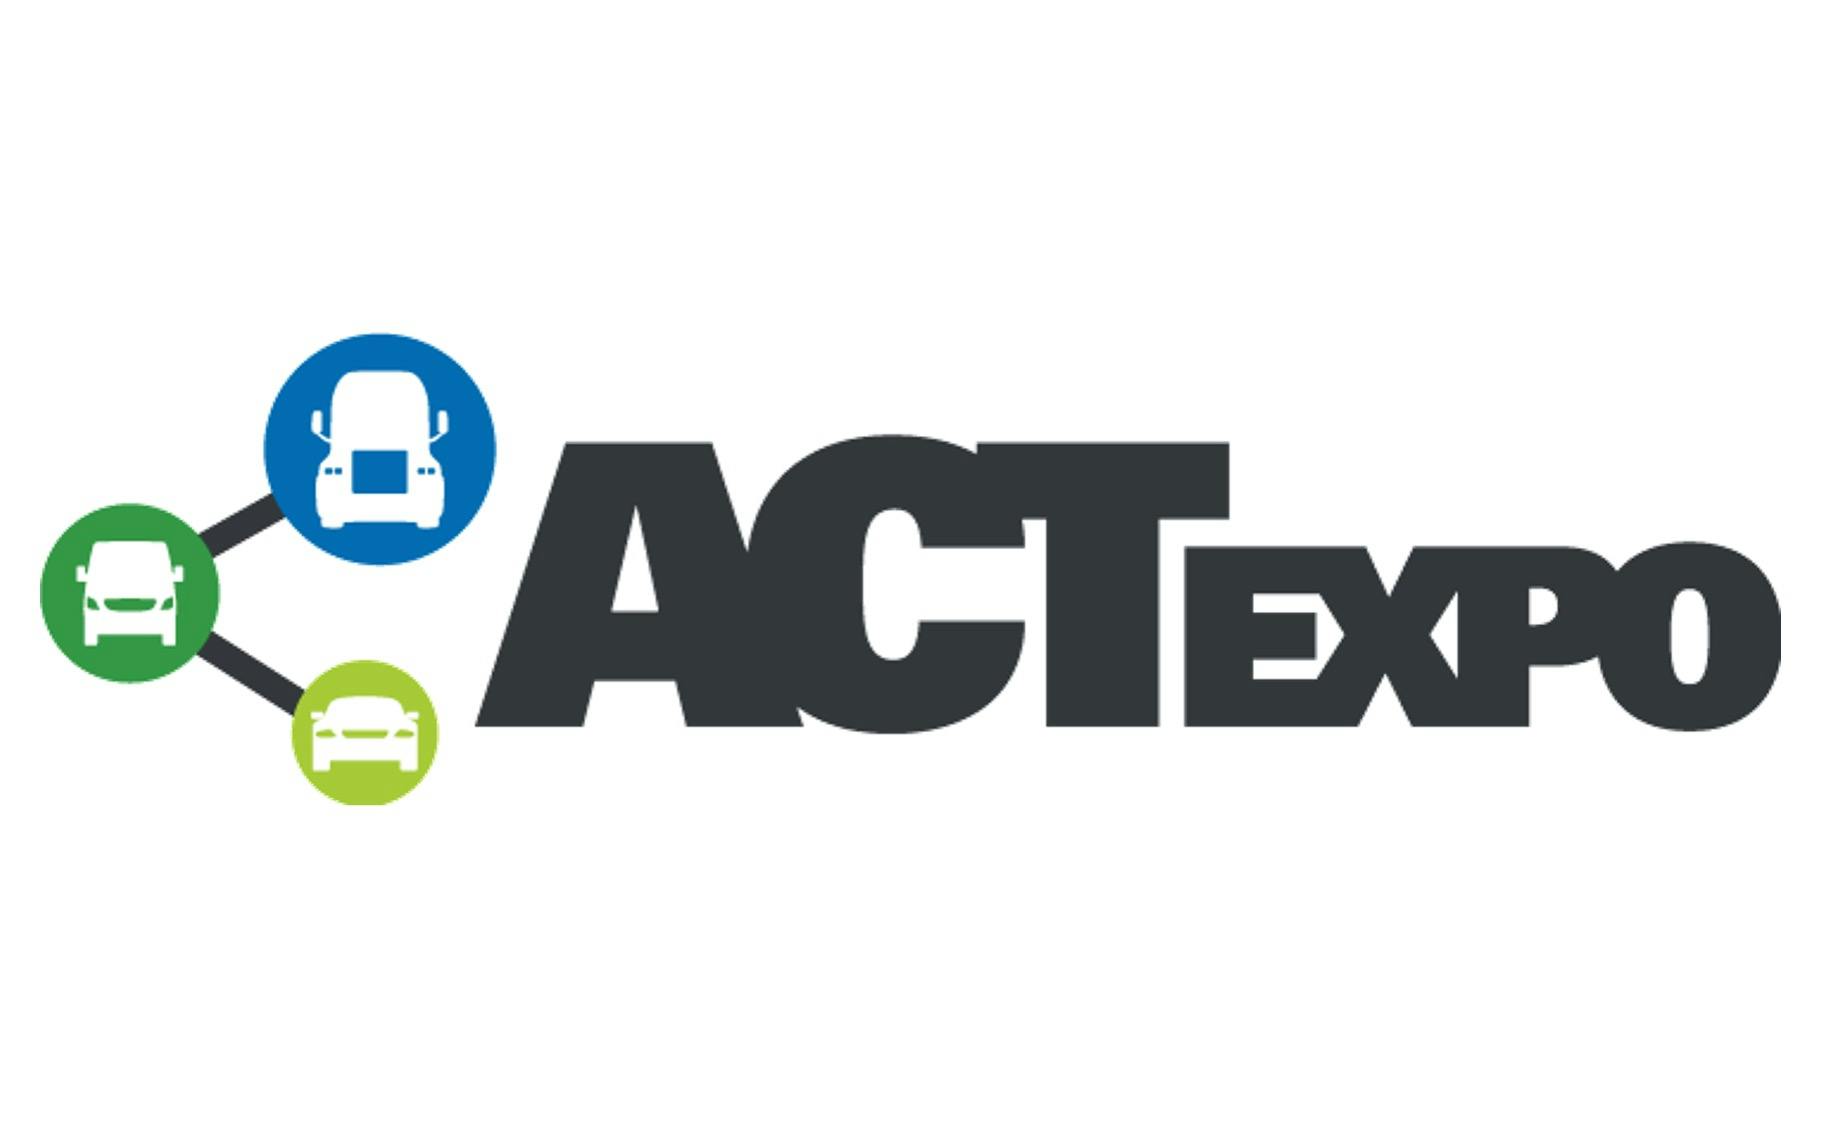 ACT Expo logo